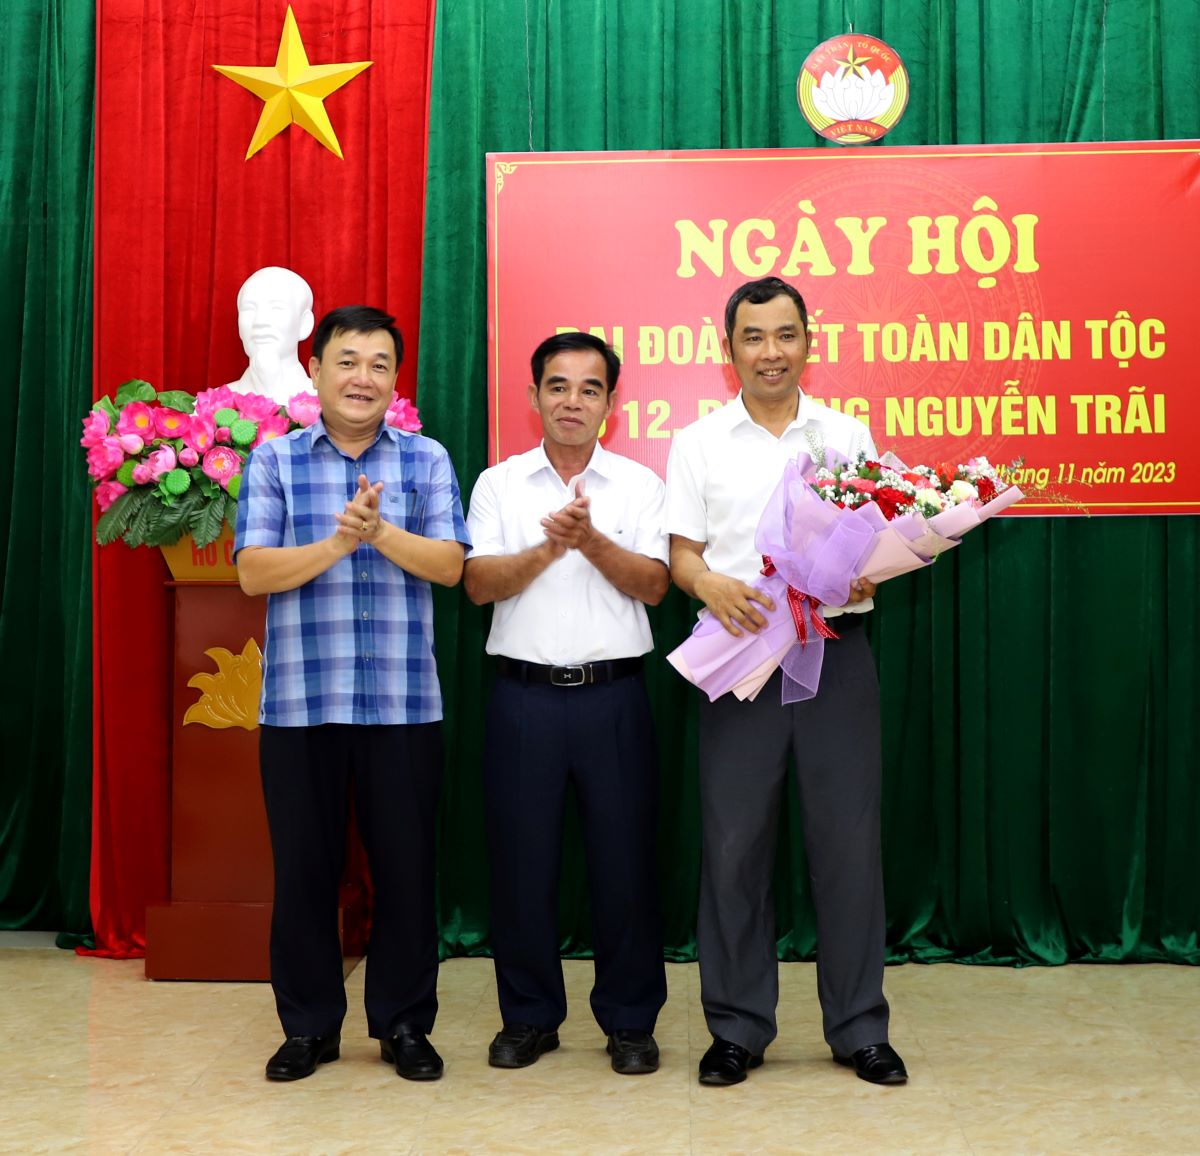 Phó Bí thư Thường trực Thành ủy Hà Giang Bùi Huy Hoàng tặng quà Ban lãnh đạo tổ dân phố 12.